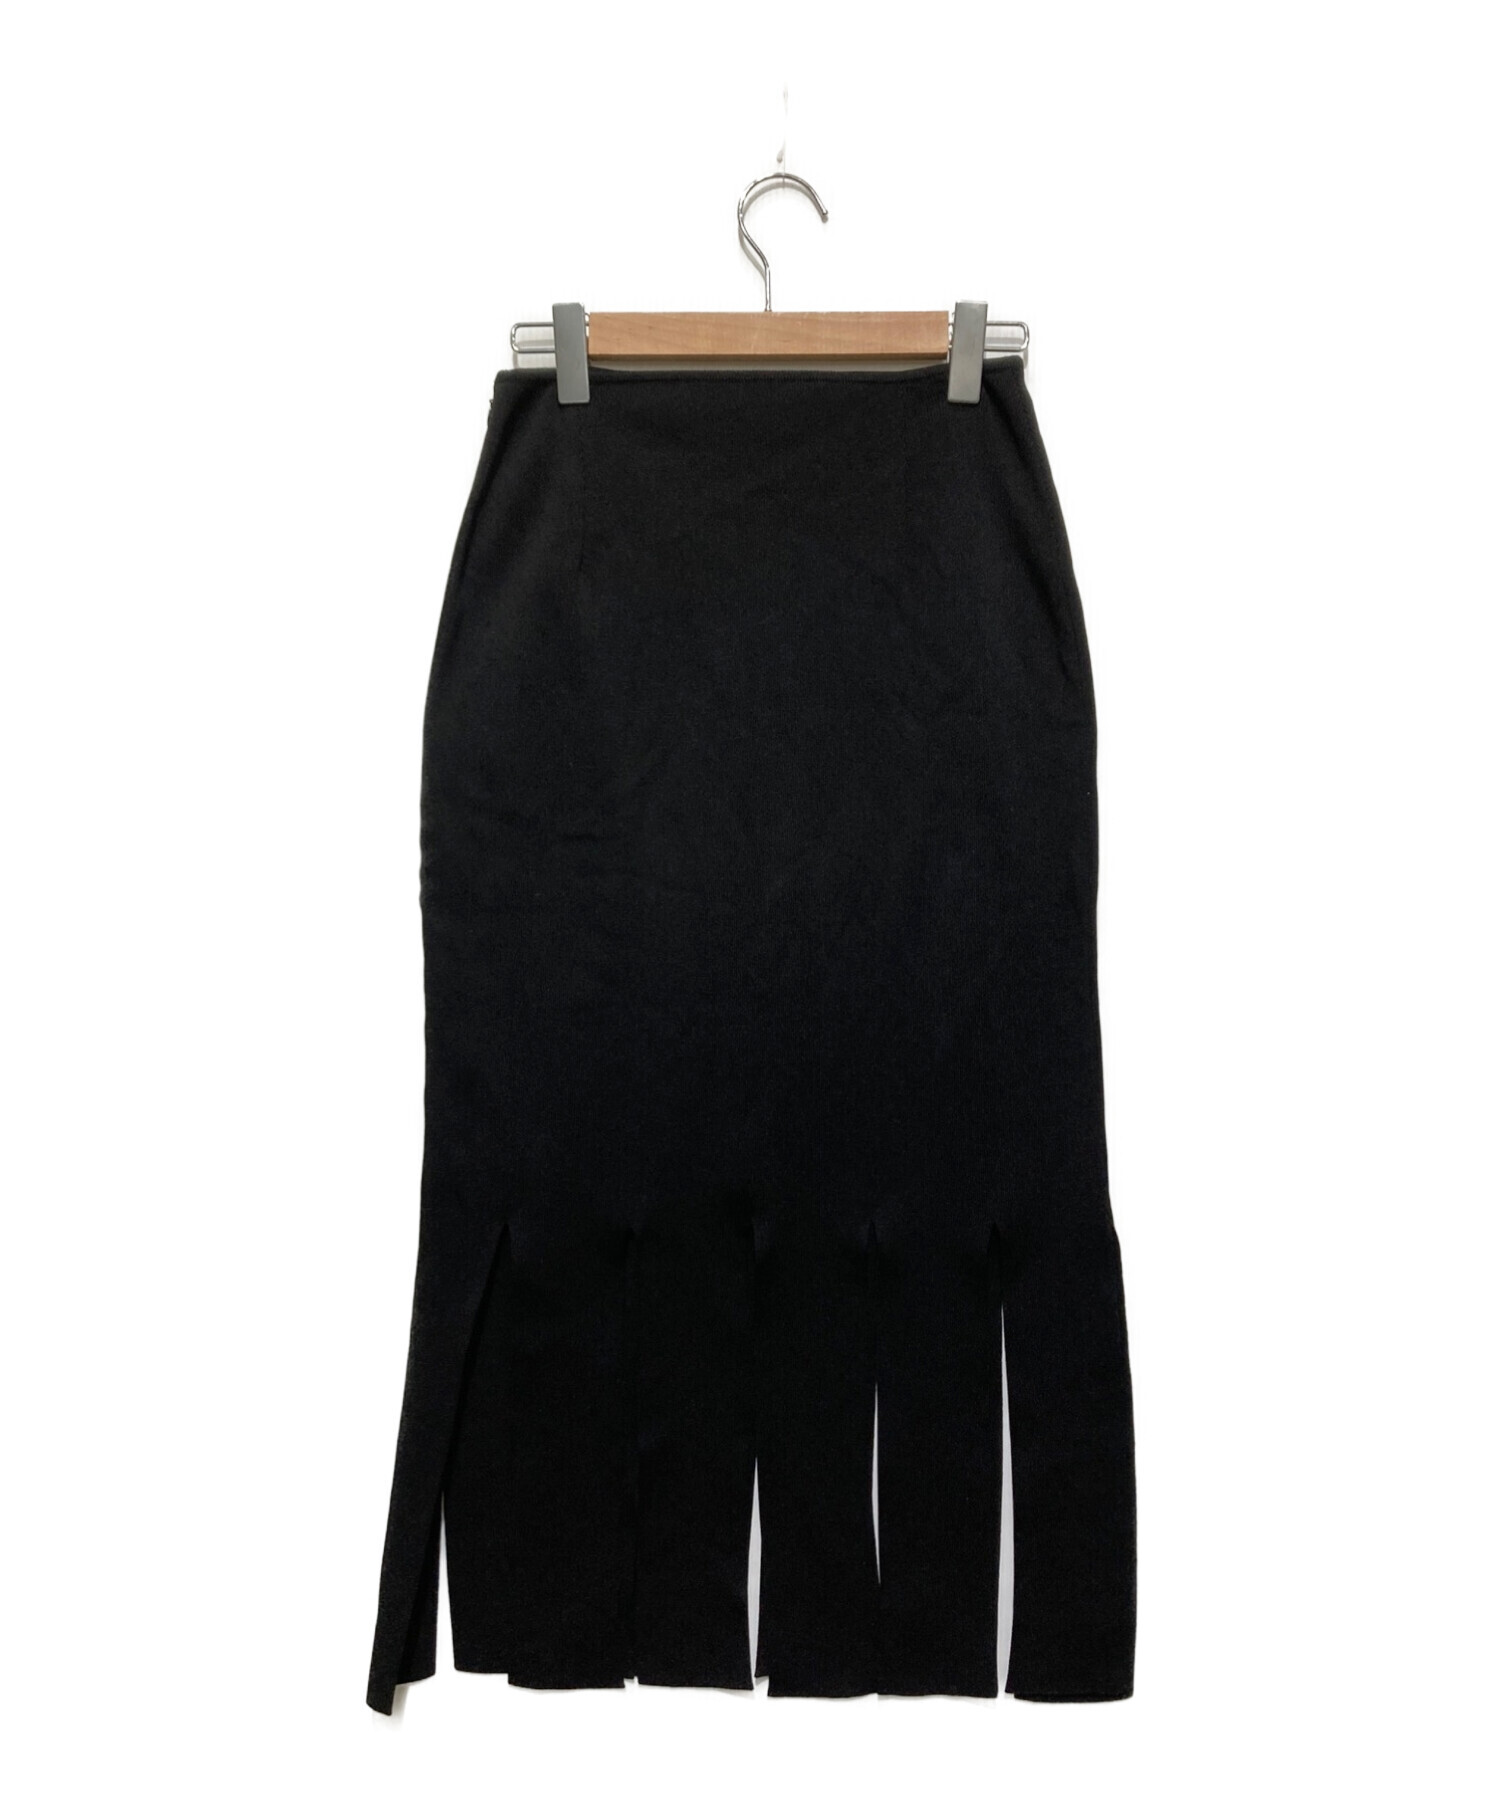 iwscat商品一覧LE CIEL BLEU Strip Form Knit Skirt